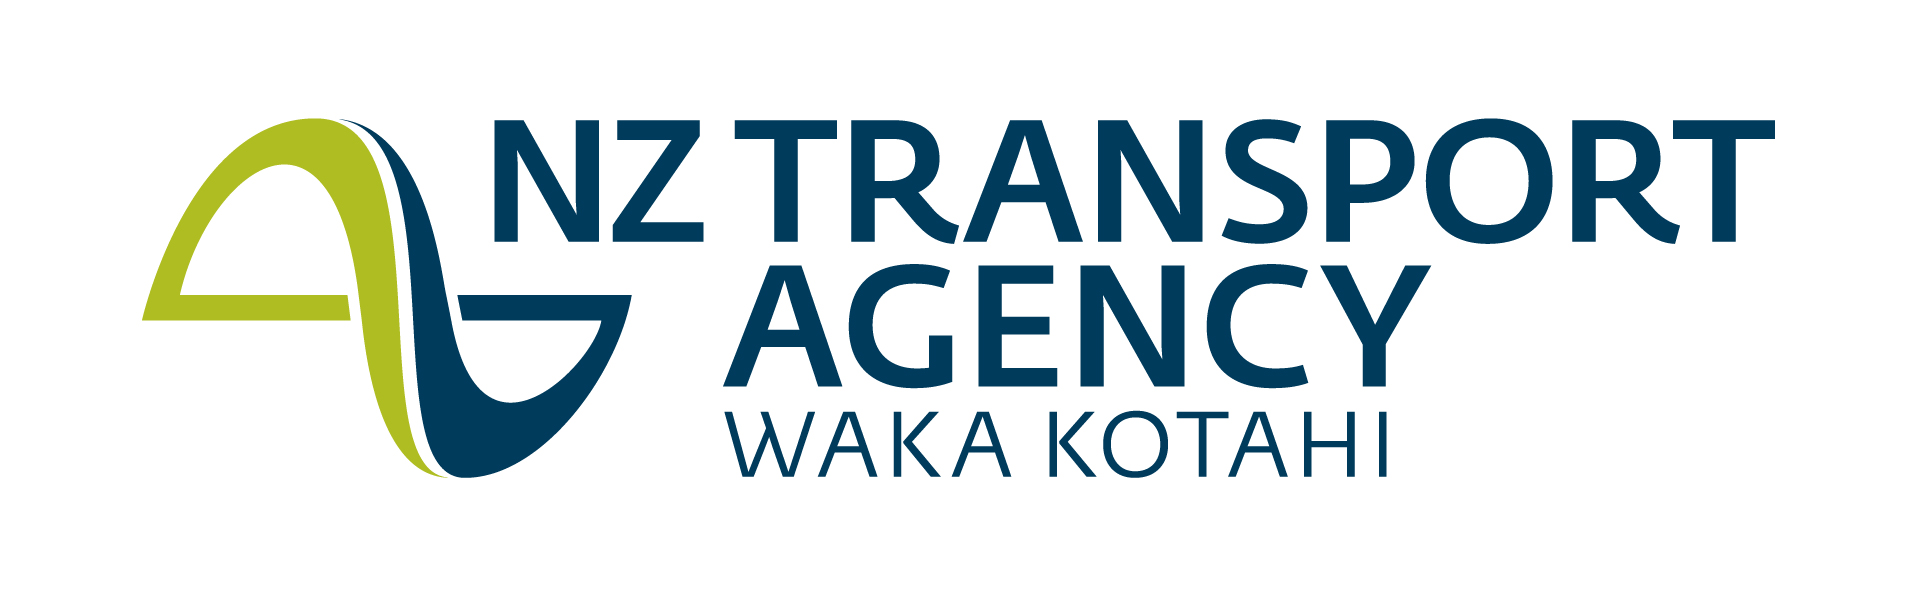 NZTA logo